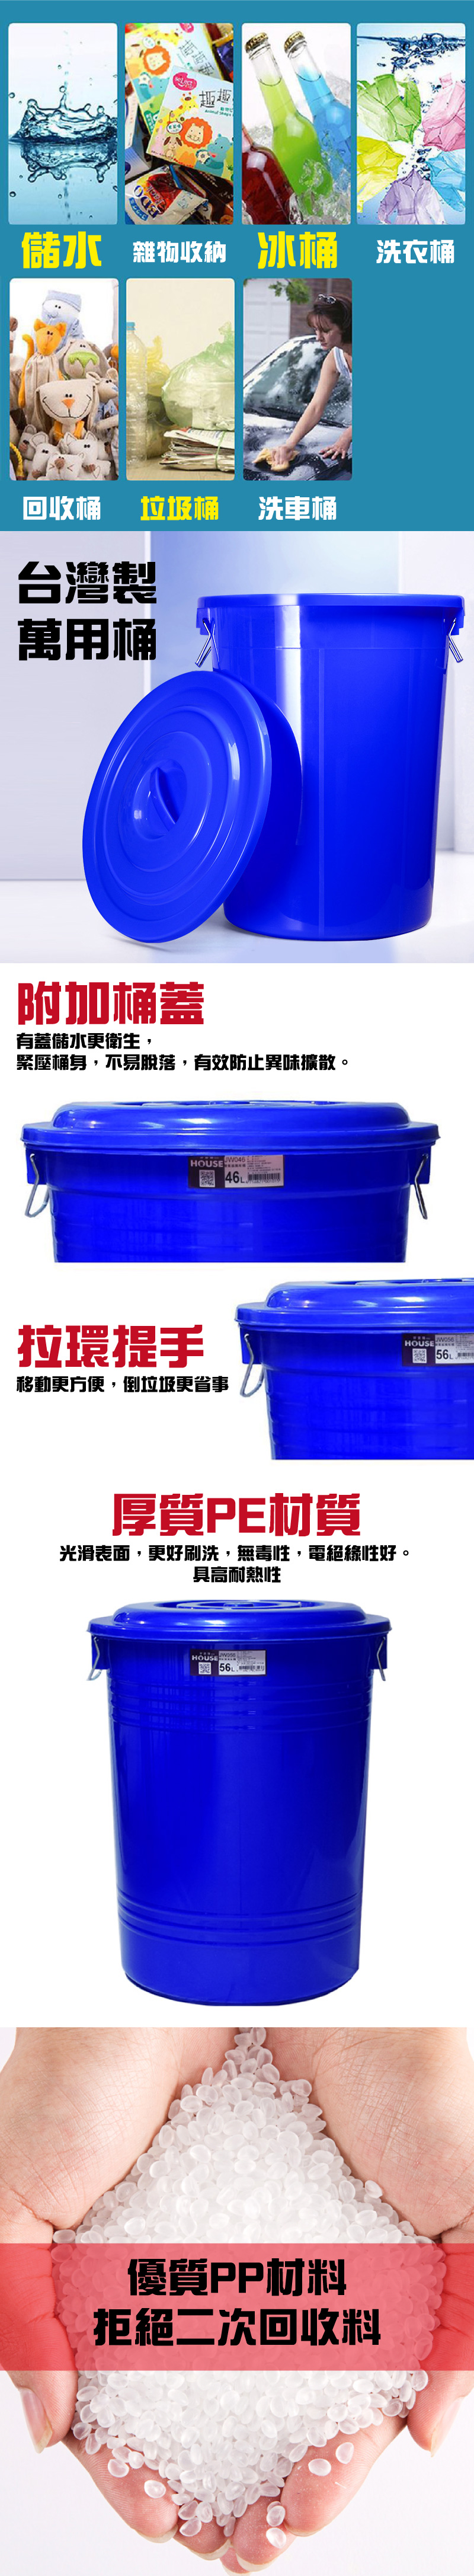       【G+ 居家】MIT台灣製萬用桶儲水桶垃圾桶冰桶125L(2入組-